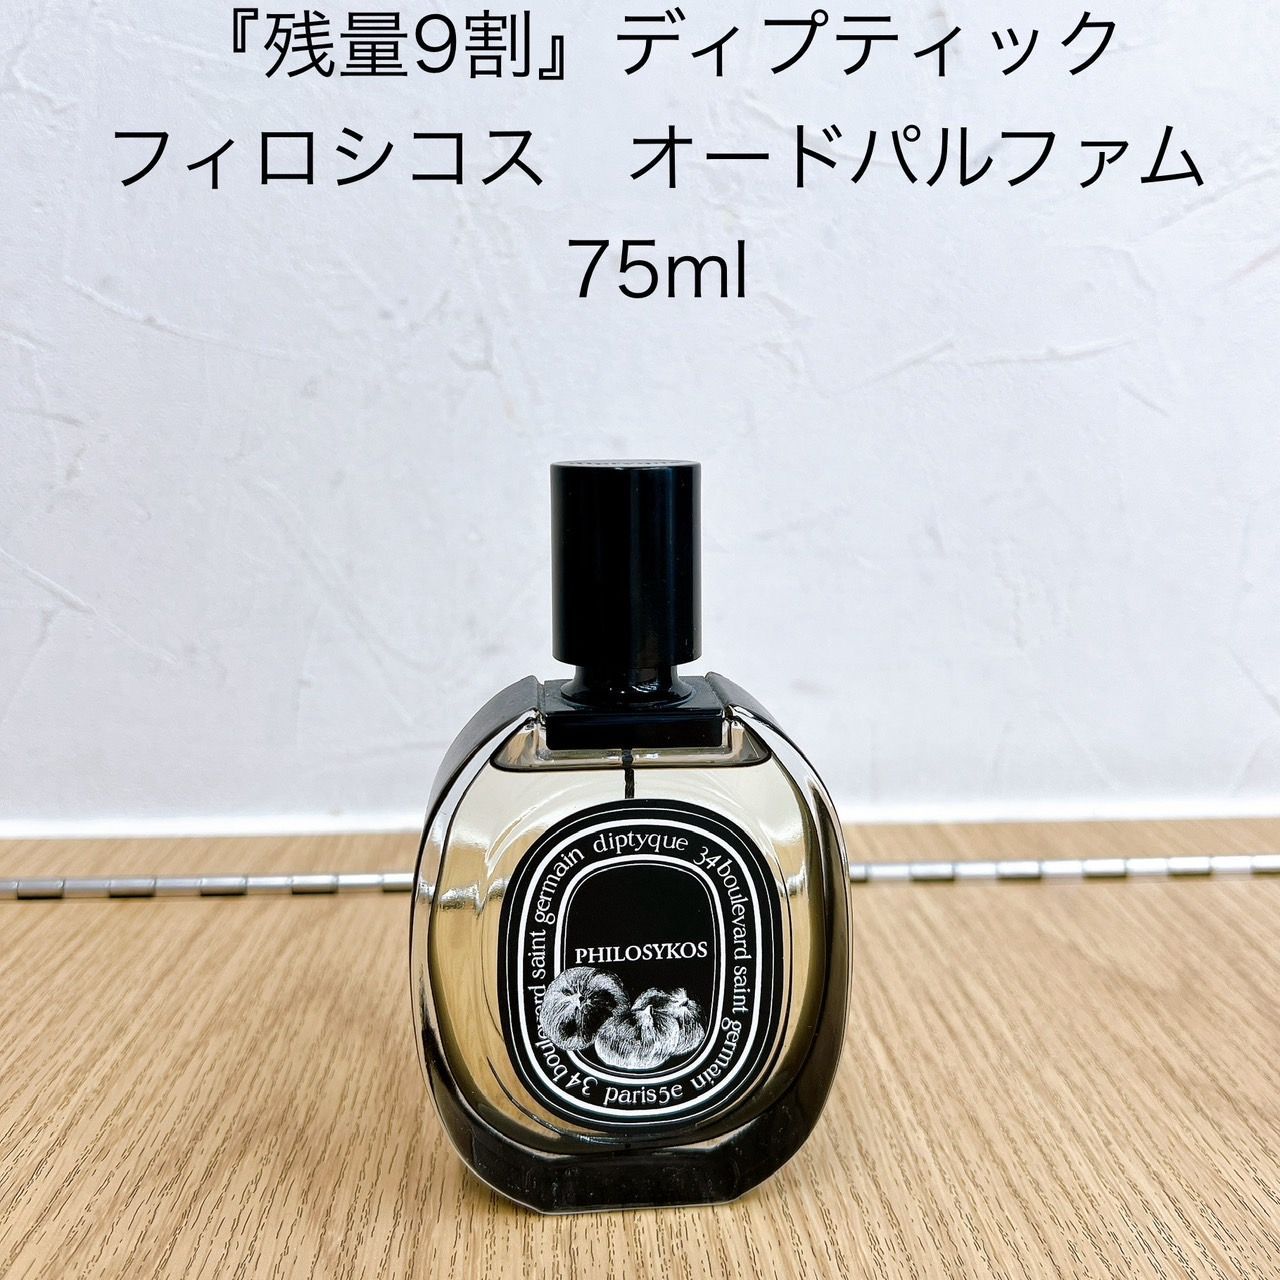 購入廉価ディプティック フィロシコス オードパルファム 75ml 香水(ユニセックス)